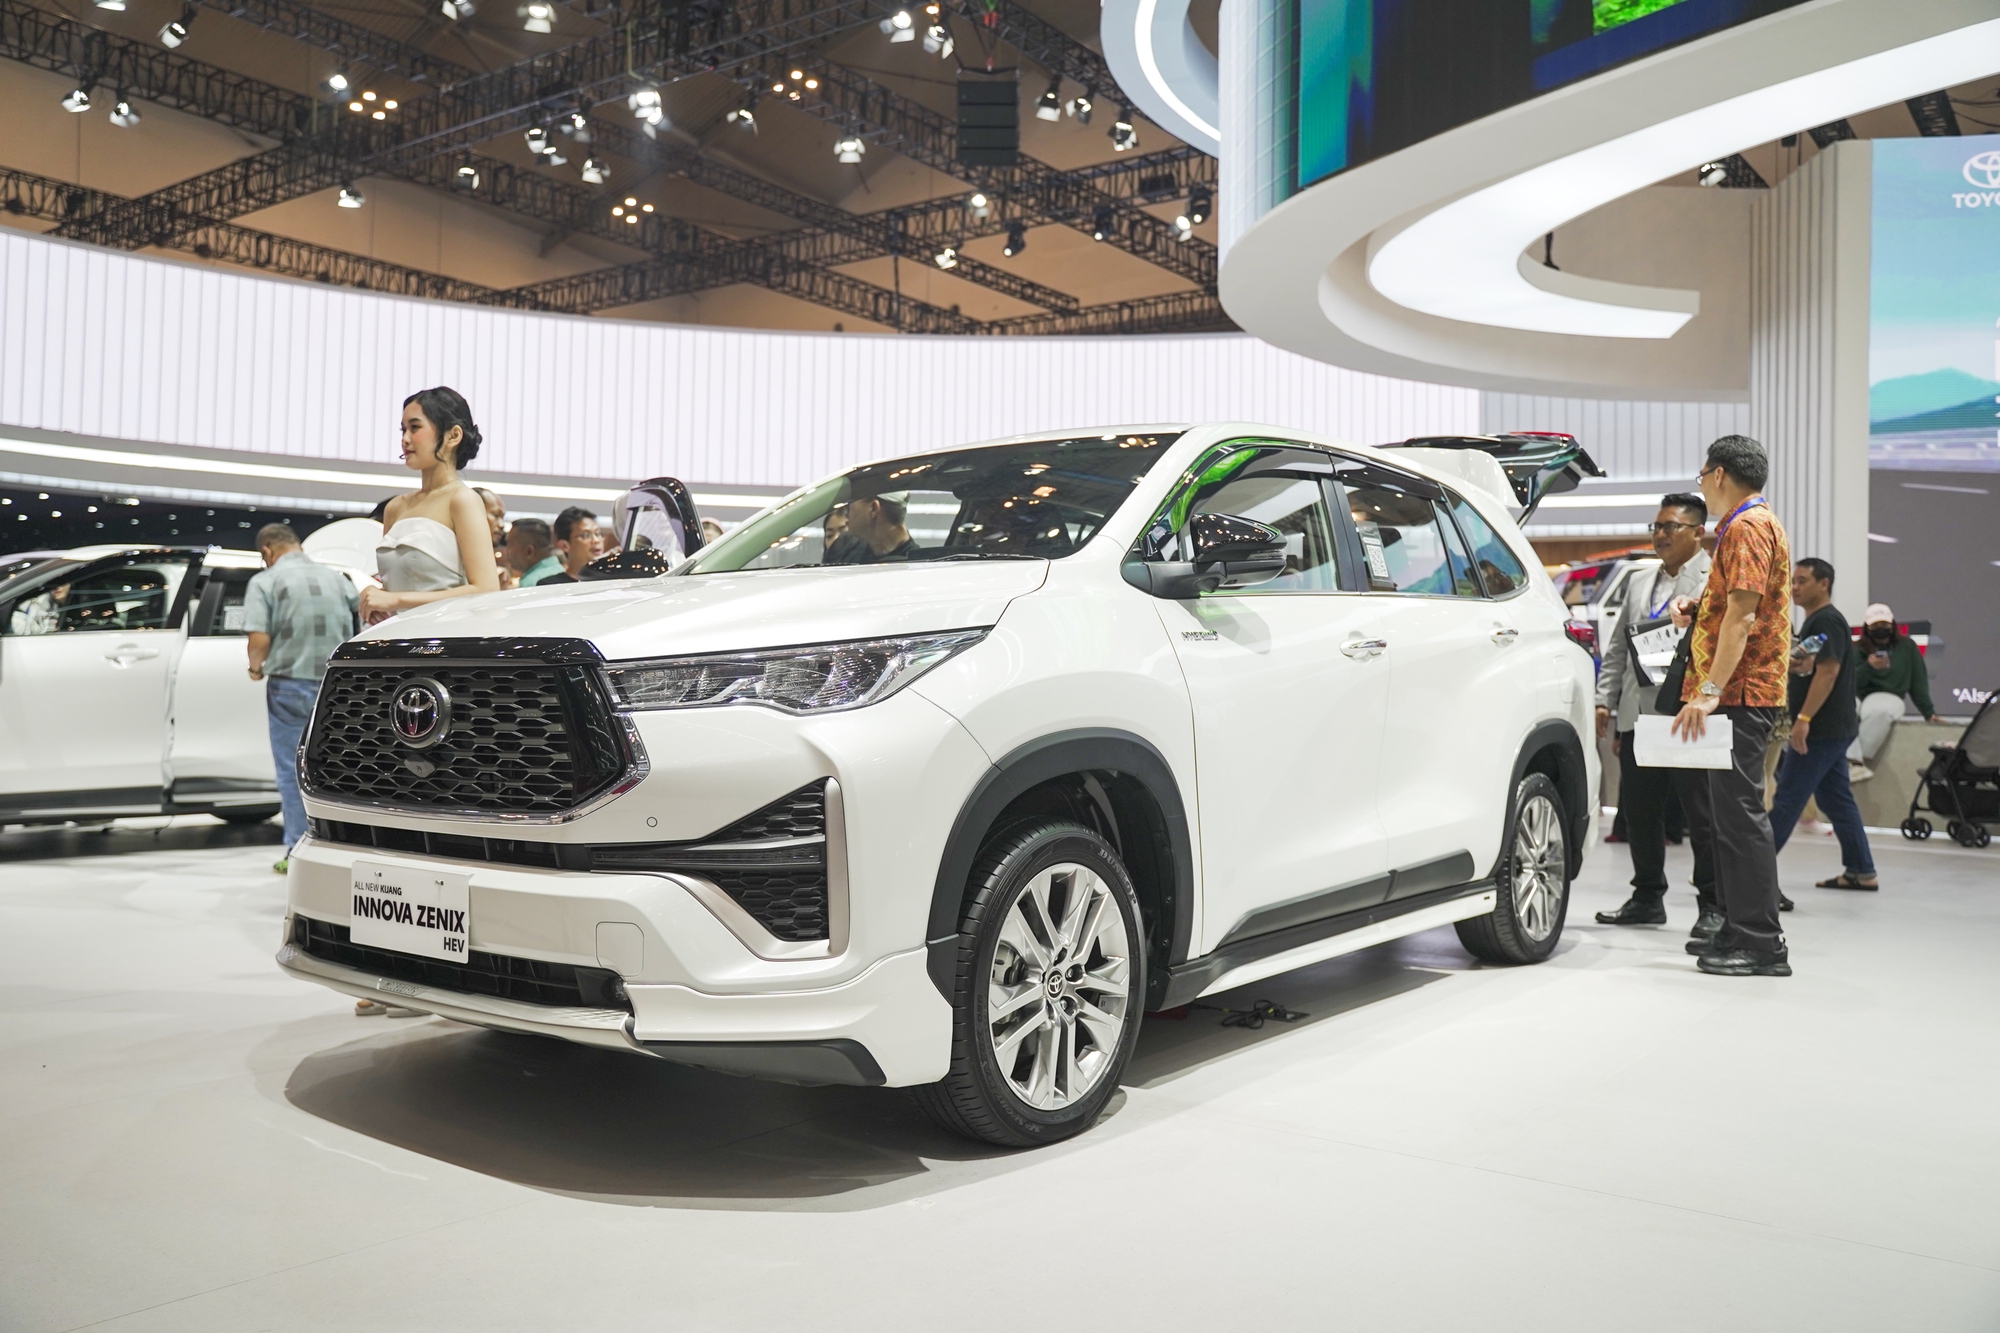 Xem trước Toyota Innova hybrid sắp về Việt Nam: Giá không dưới 1 tỷ đồng, vượt trội về công nghệ so với bản cũ - Ảnh 2.